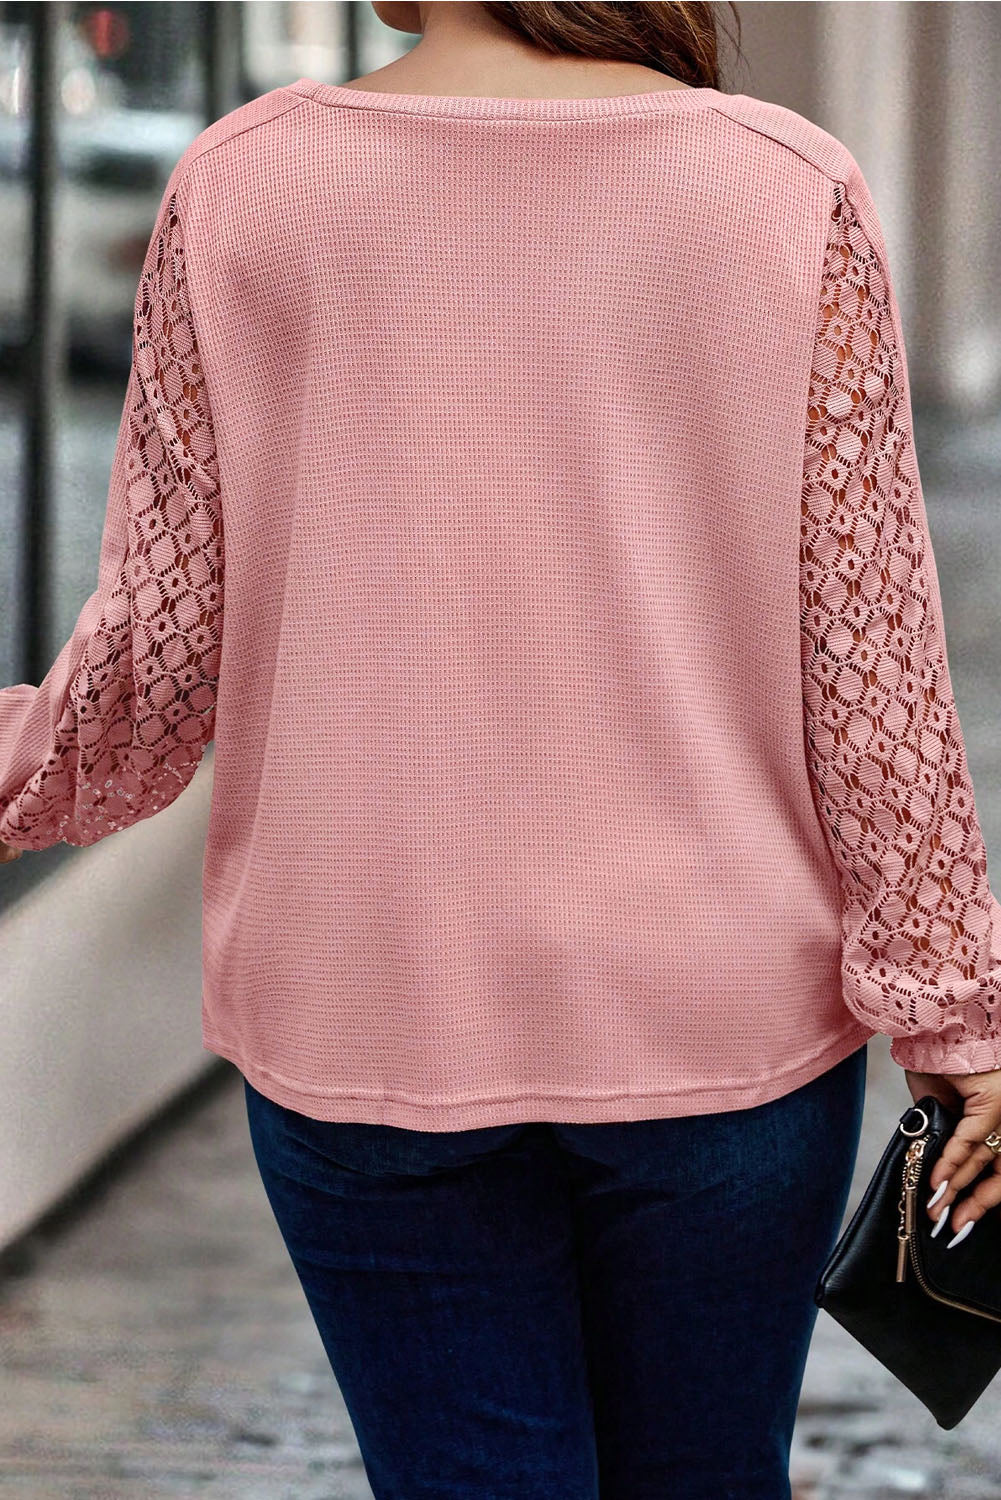 Haut en tricot texturé à manches en dentelle contrastée rose abricot de grande taille